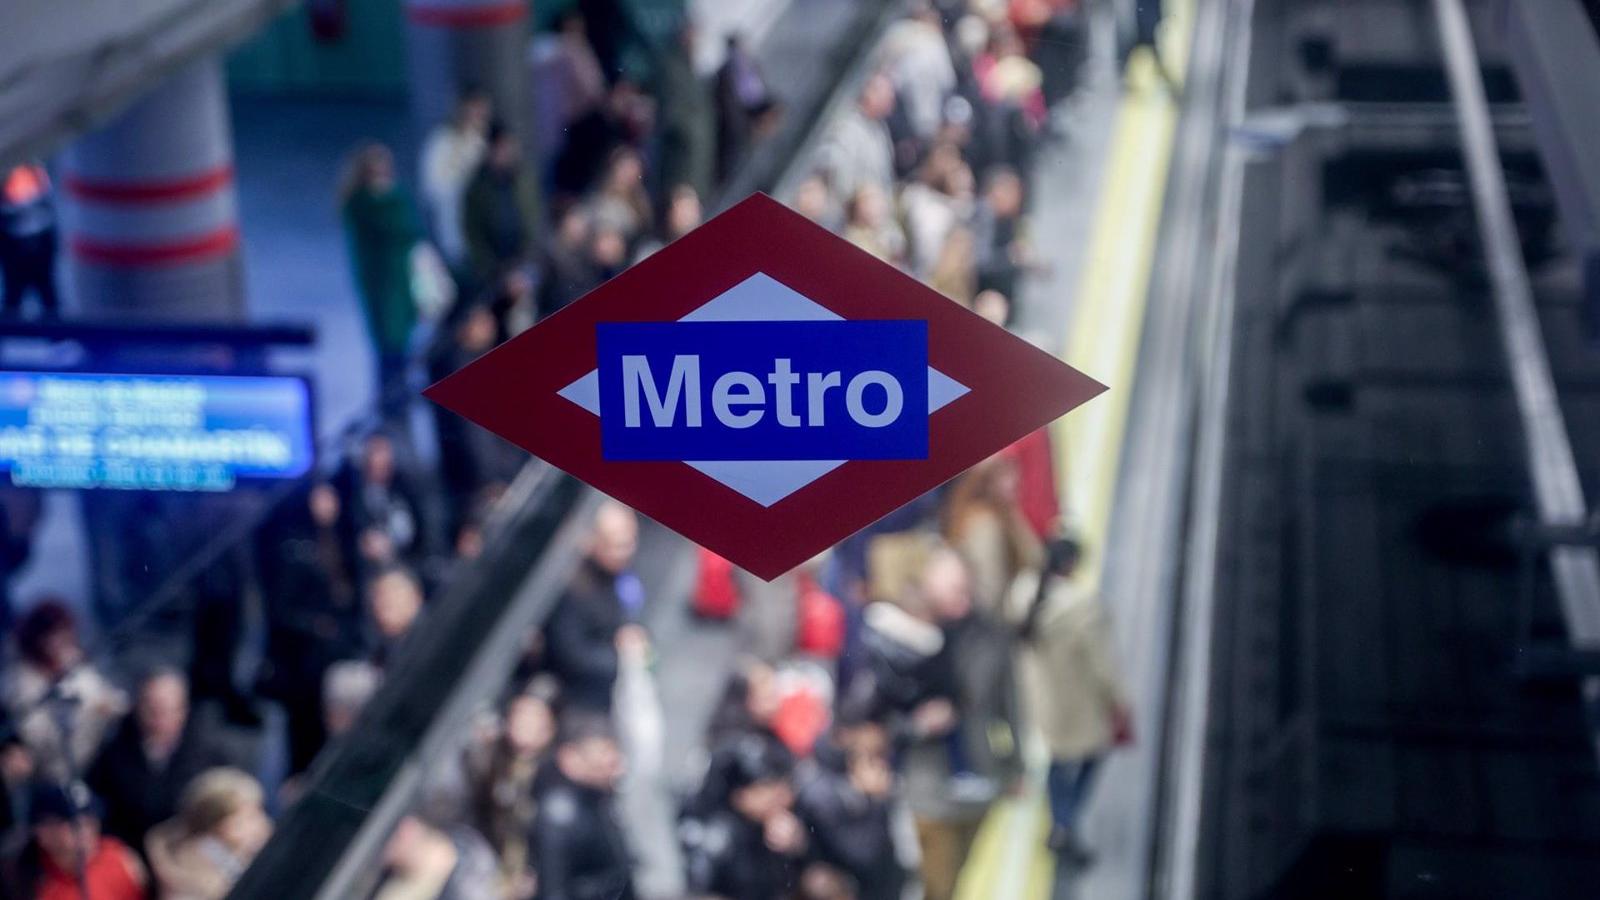 Metro renovará el vestuario de 7.500 trabajadores con prendas de mayor calidad y mejoras en materia de riesgos laborales